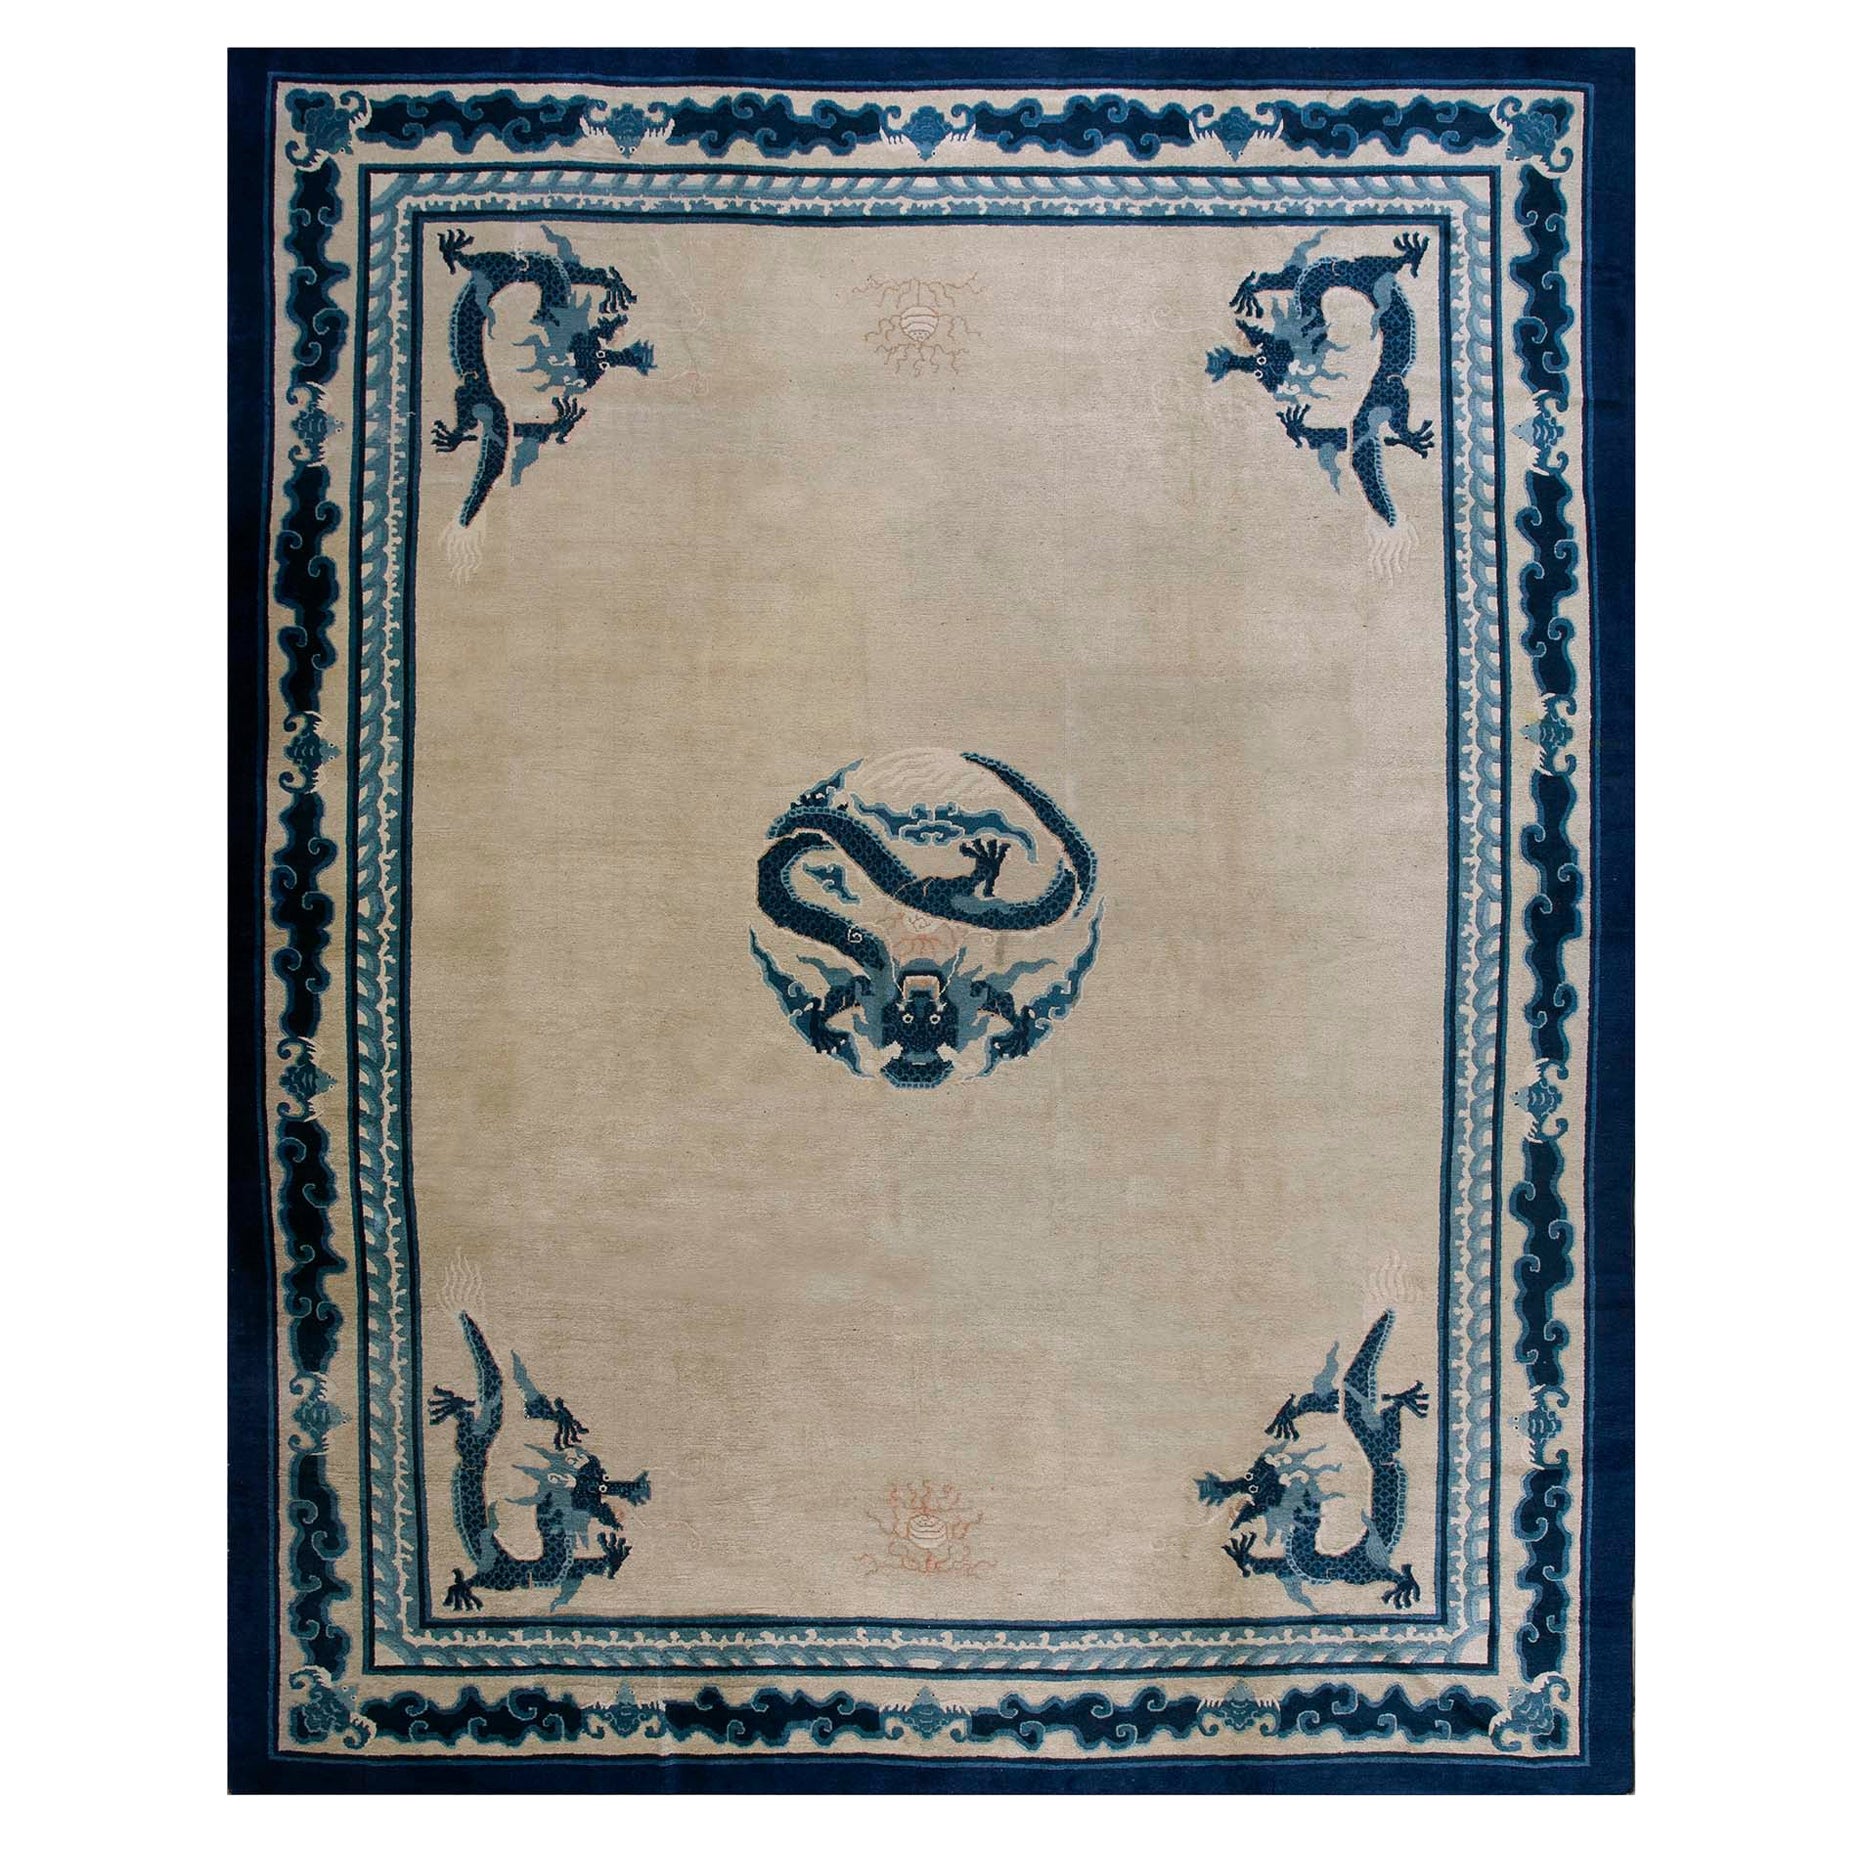 Chinesischer Pekinger Drachenteppich des späten 19. Jahrhunderts ( 10''2 x 12''8 - 310 x 385 )